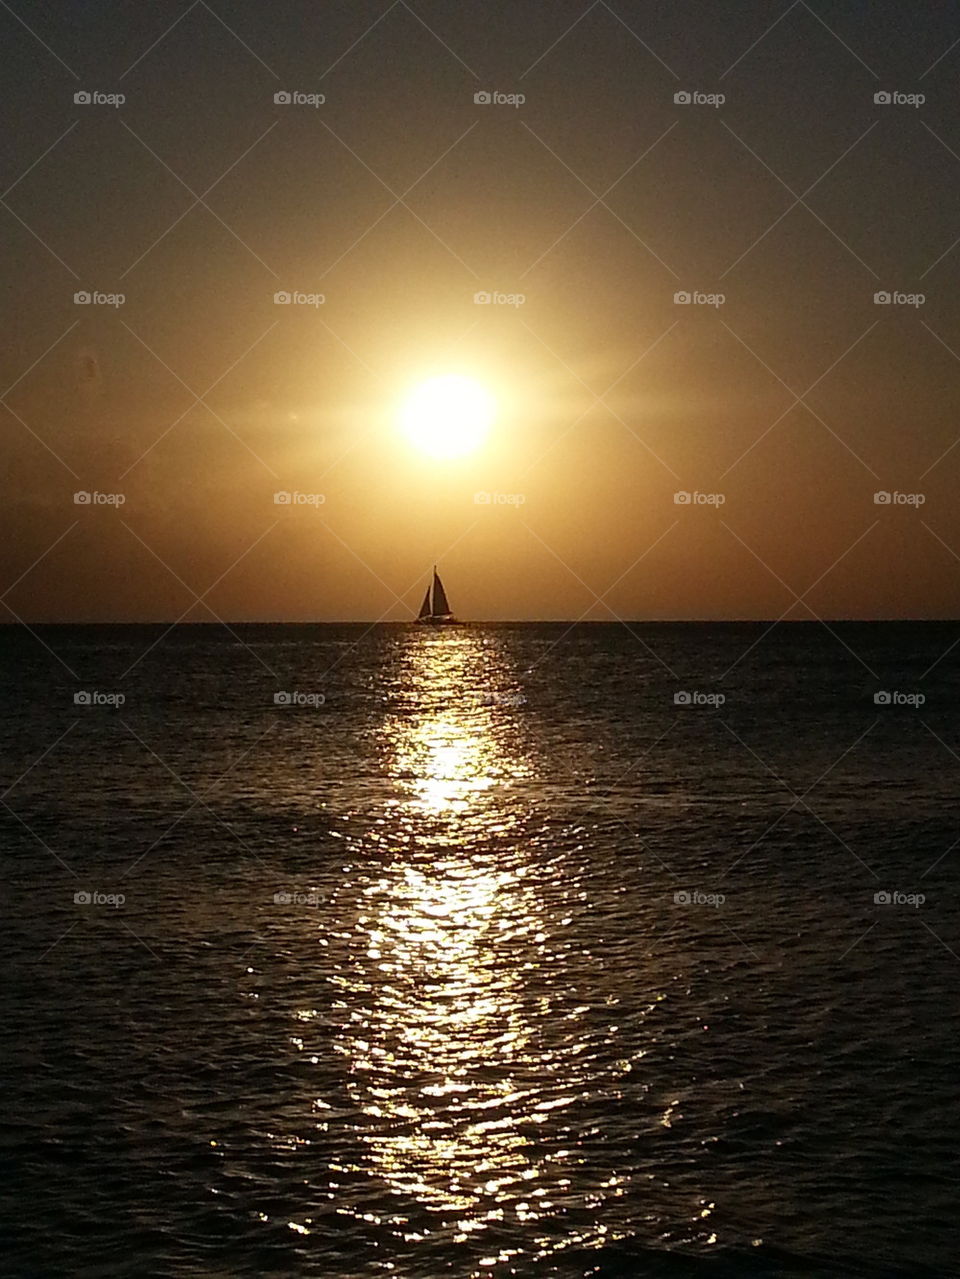 Sailing through the Sunset